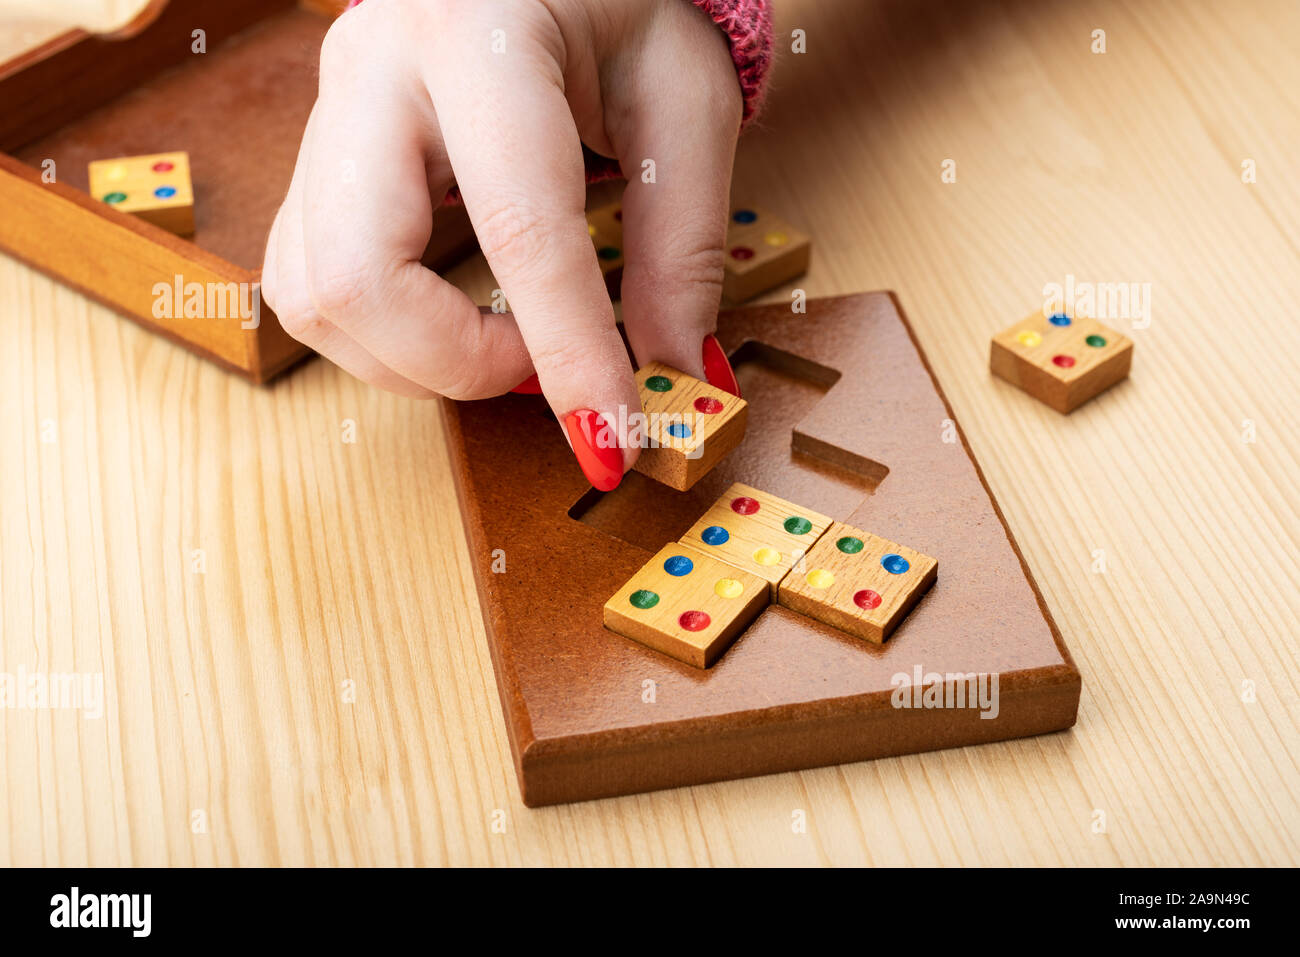 Fille essaie d'assembler un puzzle mosaïque. Manucure lumineux sur les ongles. Puzzles de la catégorie puzzle correspondant edge. Copier l'espace. Concept Puzzle Banque D'Images